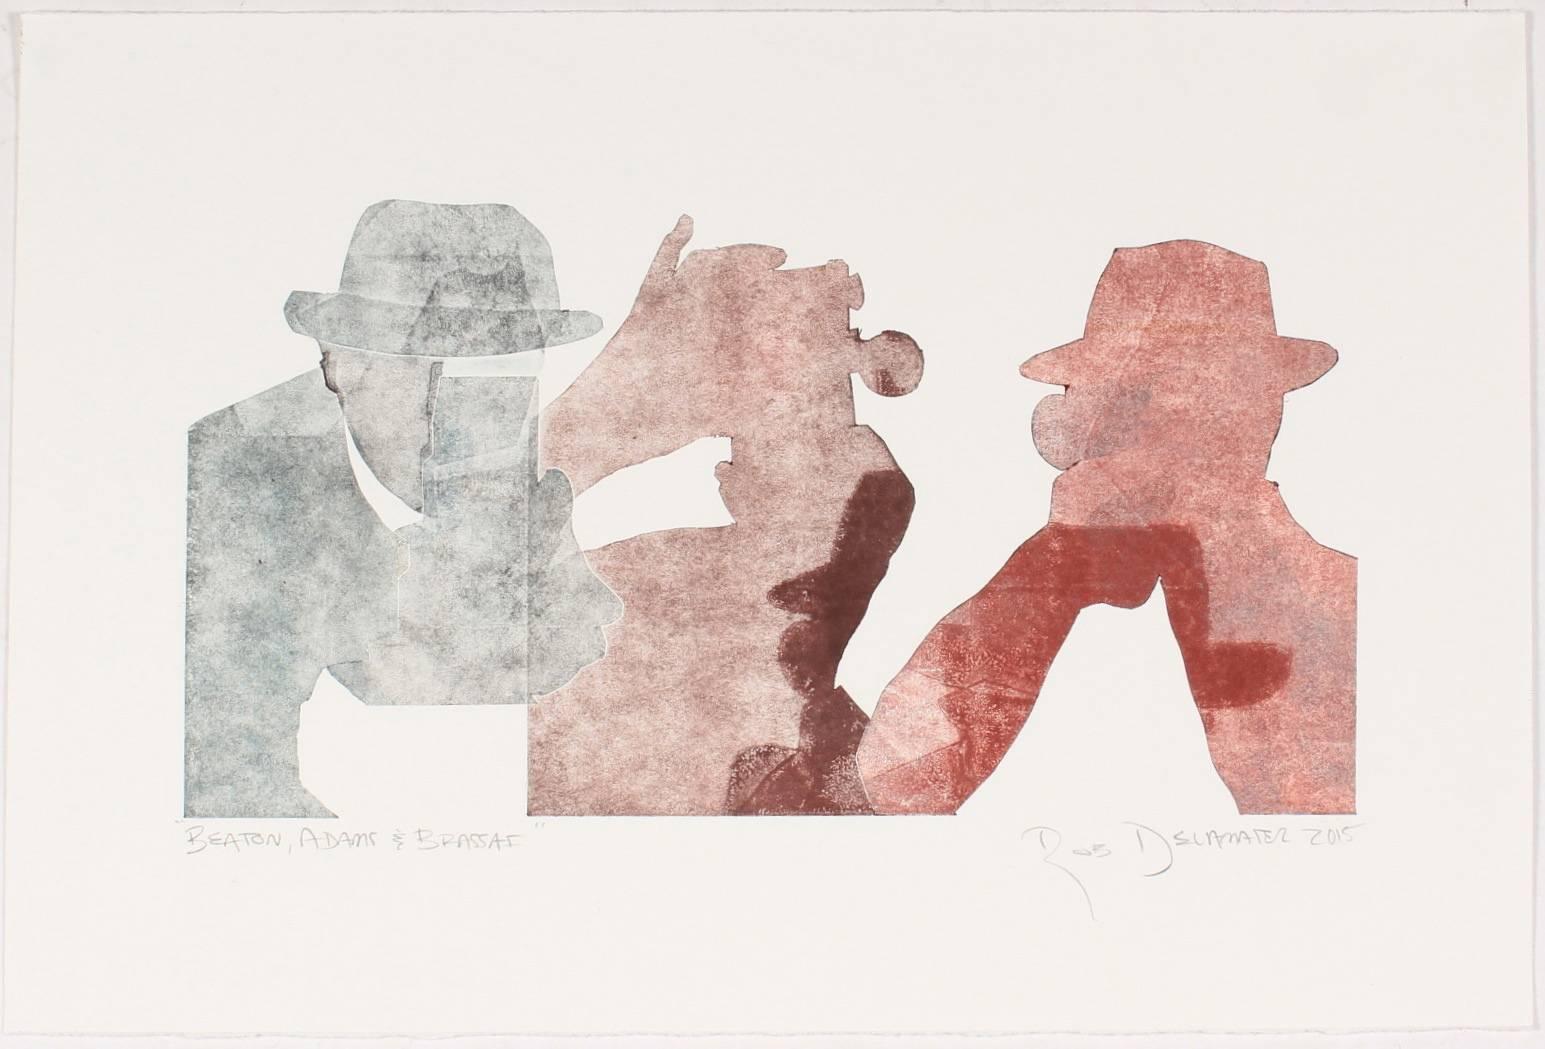 Rob Delamater Figurative Print - "Beaton, Adams, & Brassai"